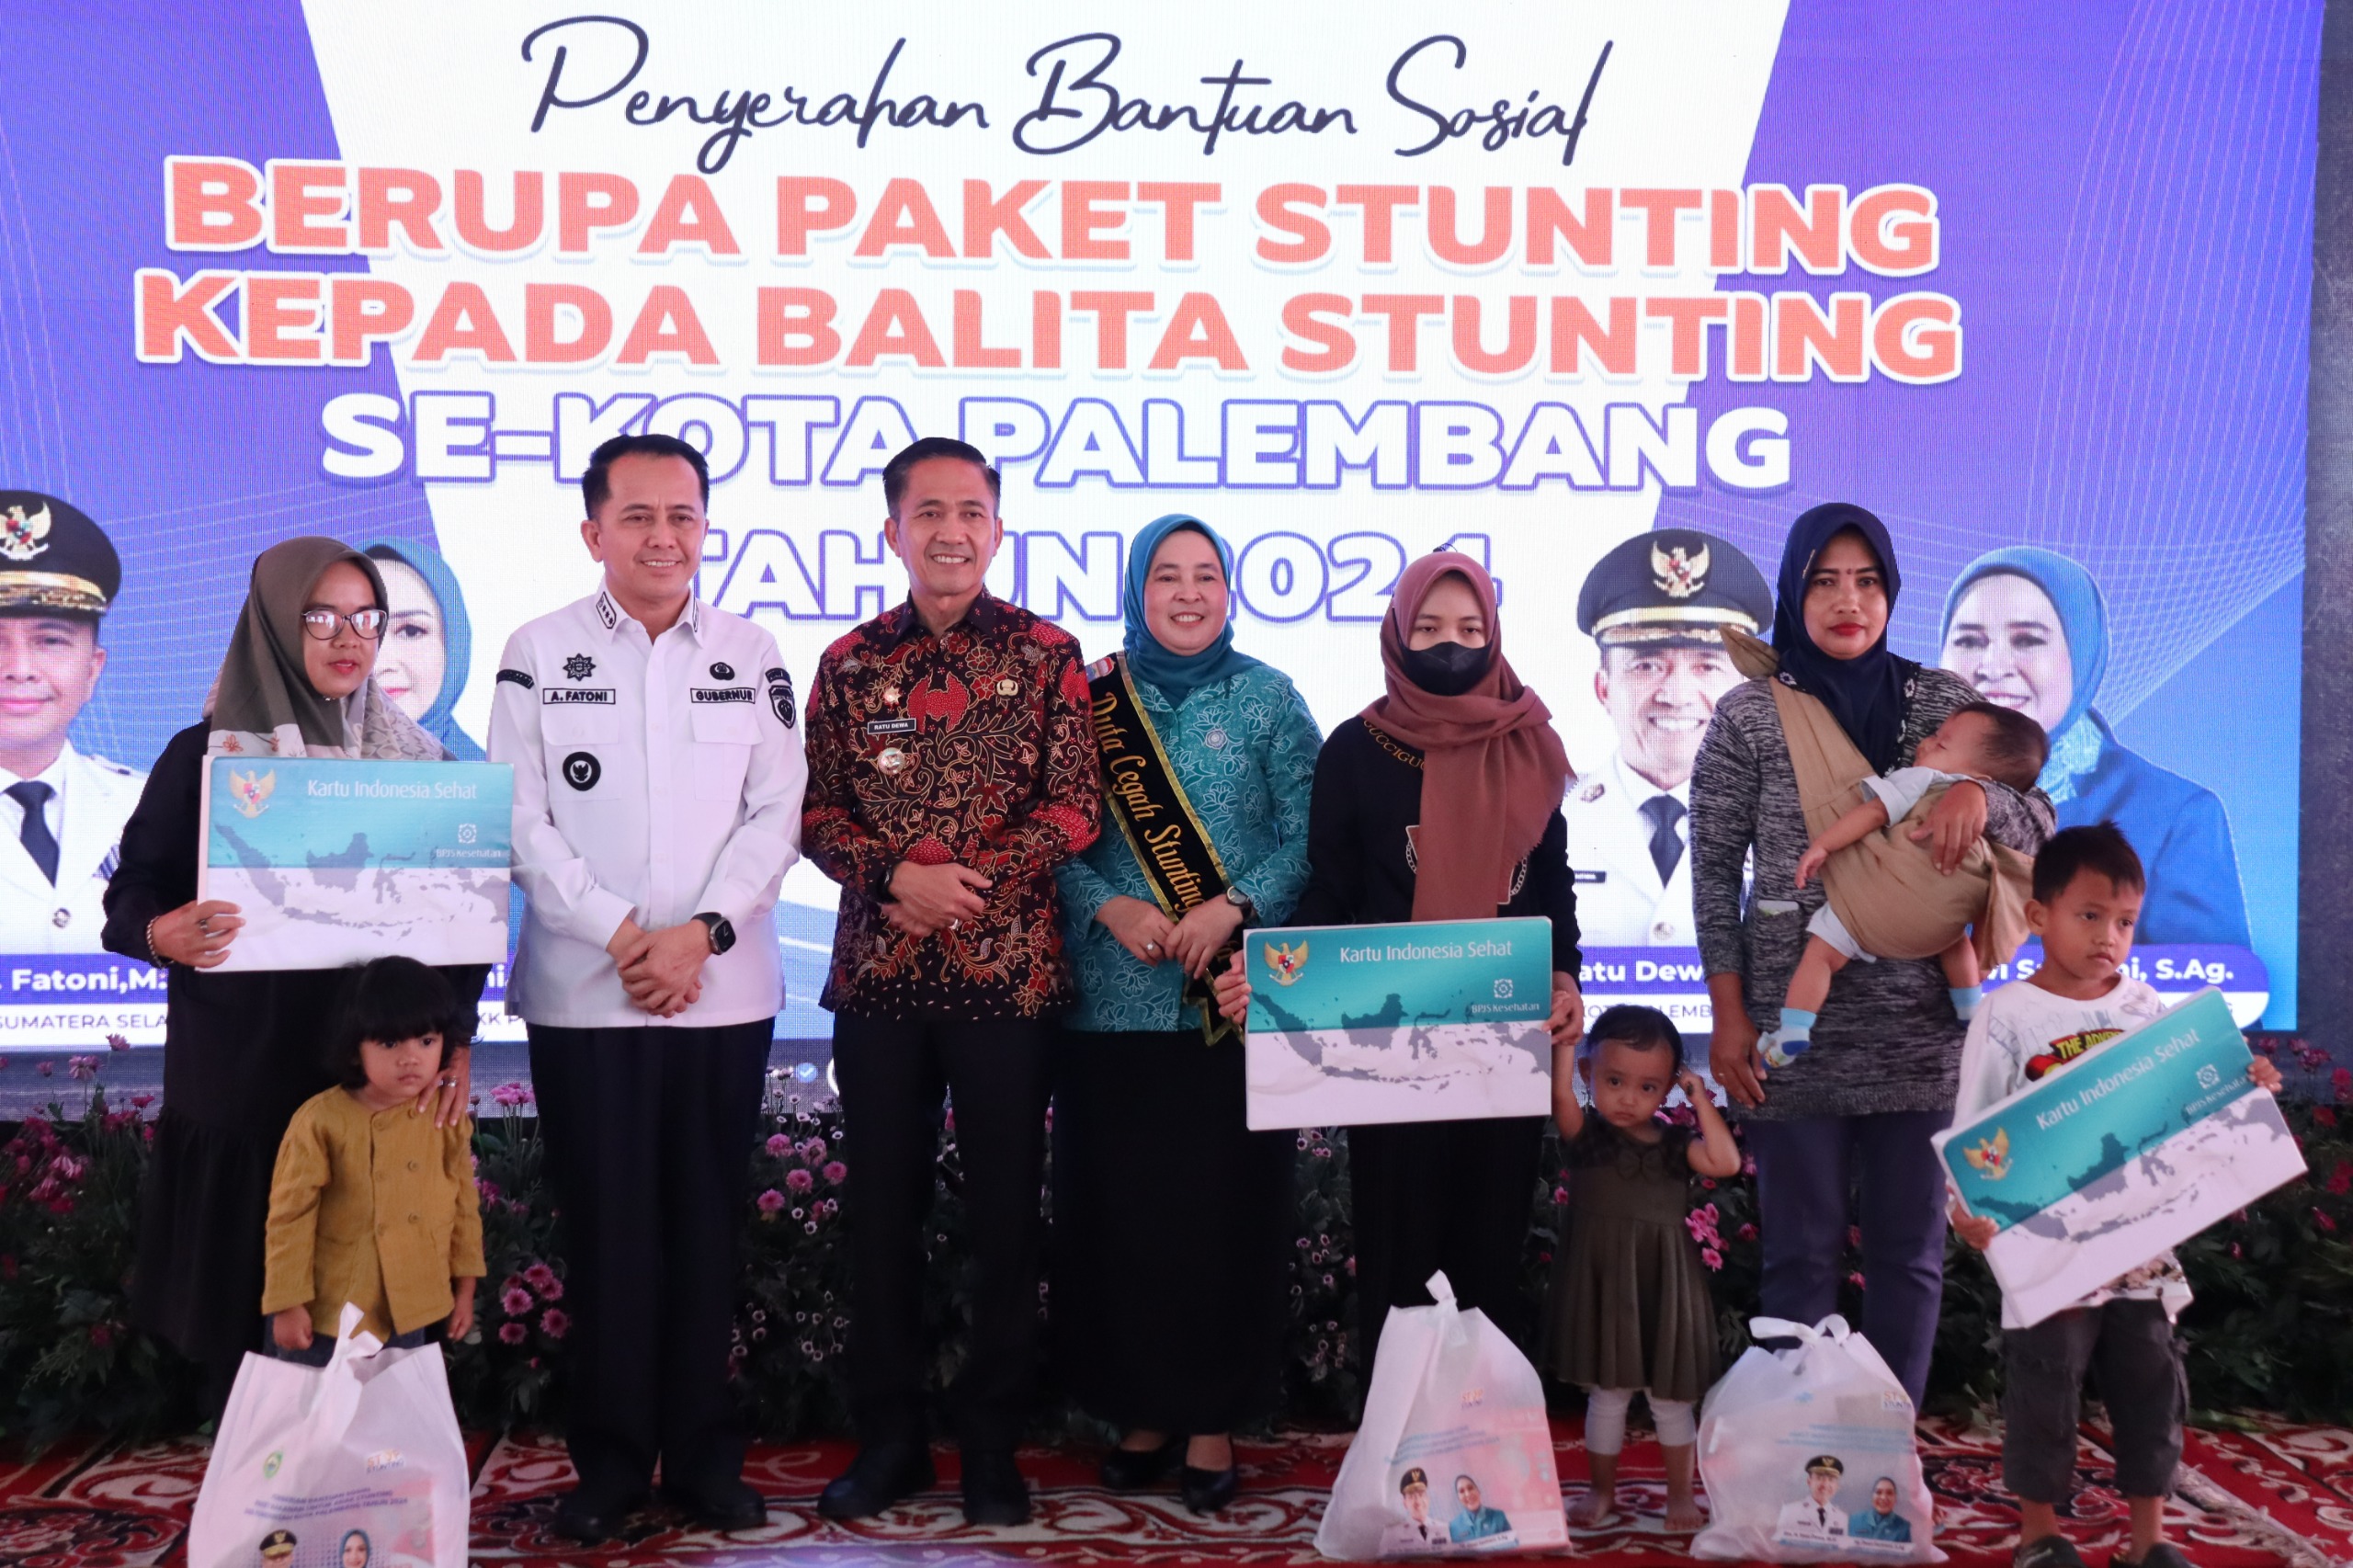 Pj Walikota Ratu Dewa Beri Bantuan Sembako untuk Balita Stunting se-Kota Palembang, Pj Gubernur: Luar Biasa!